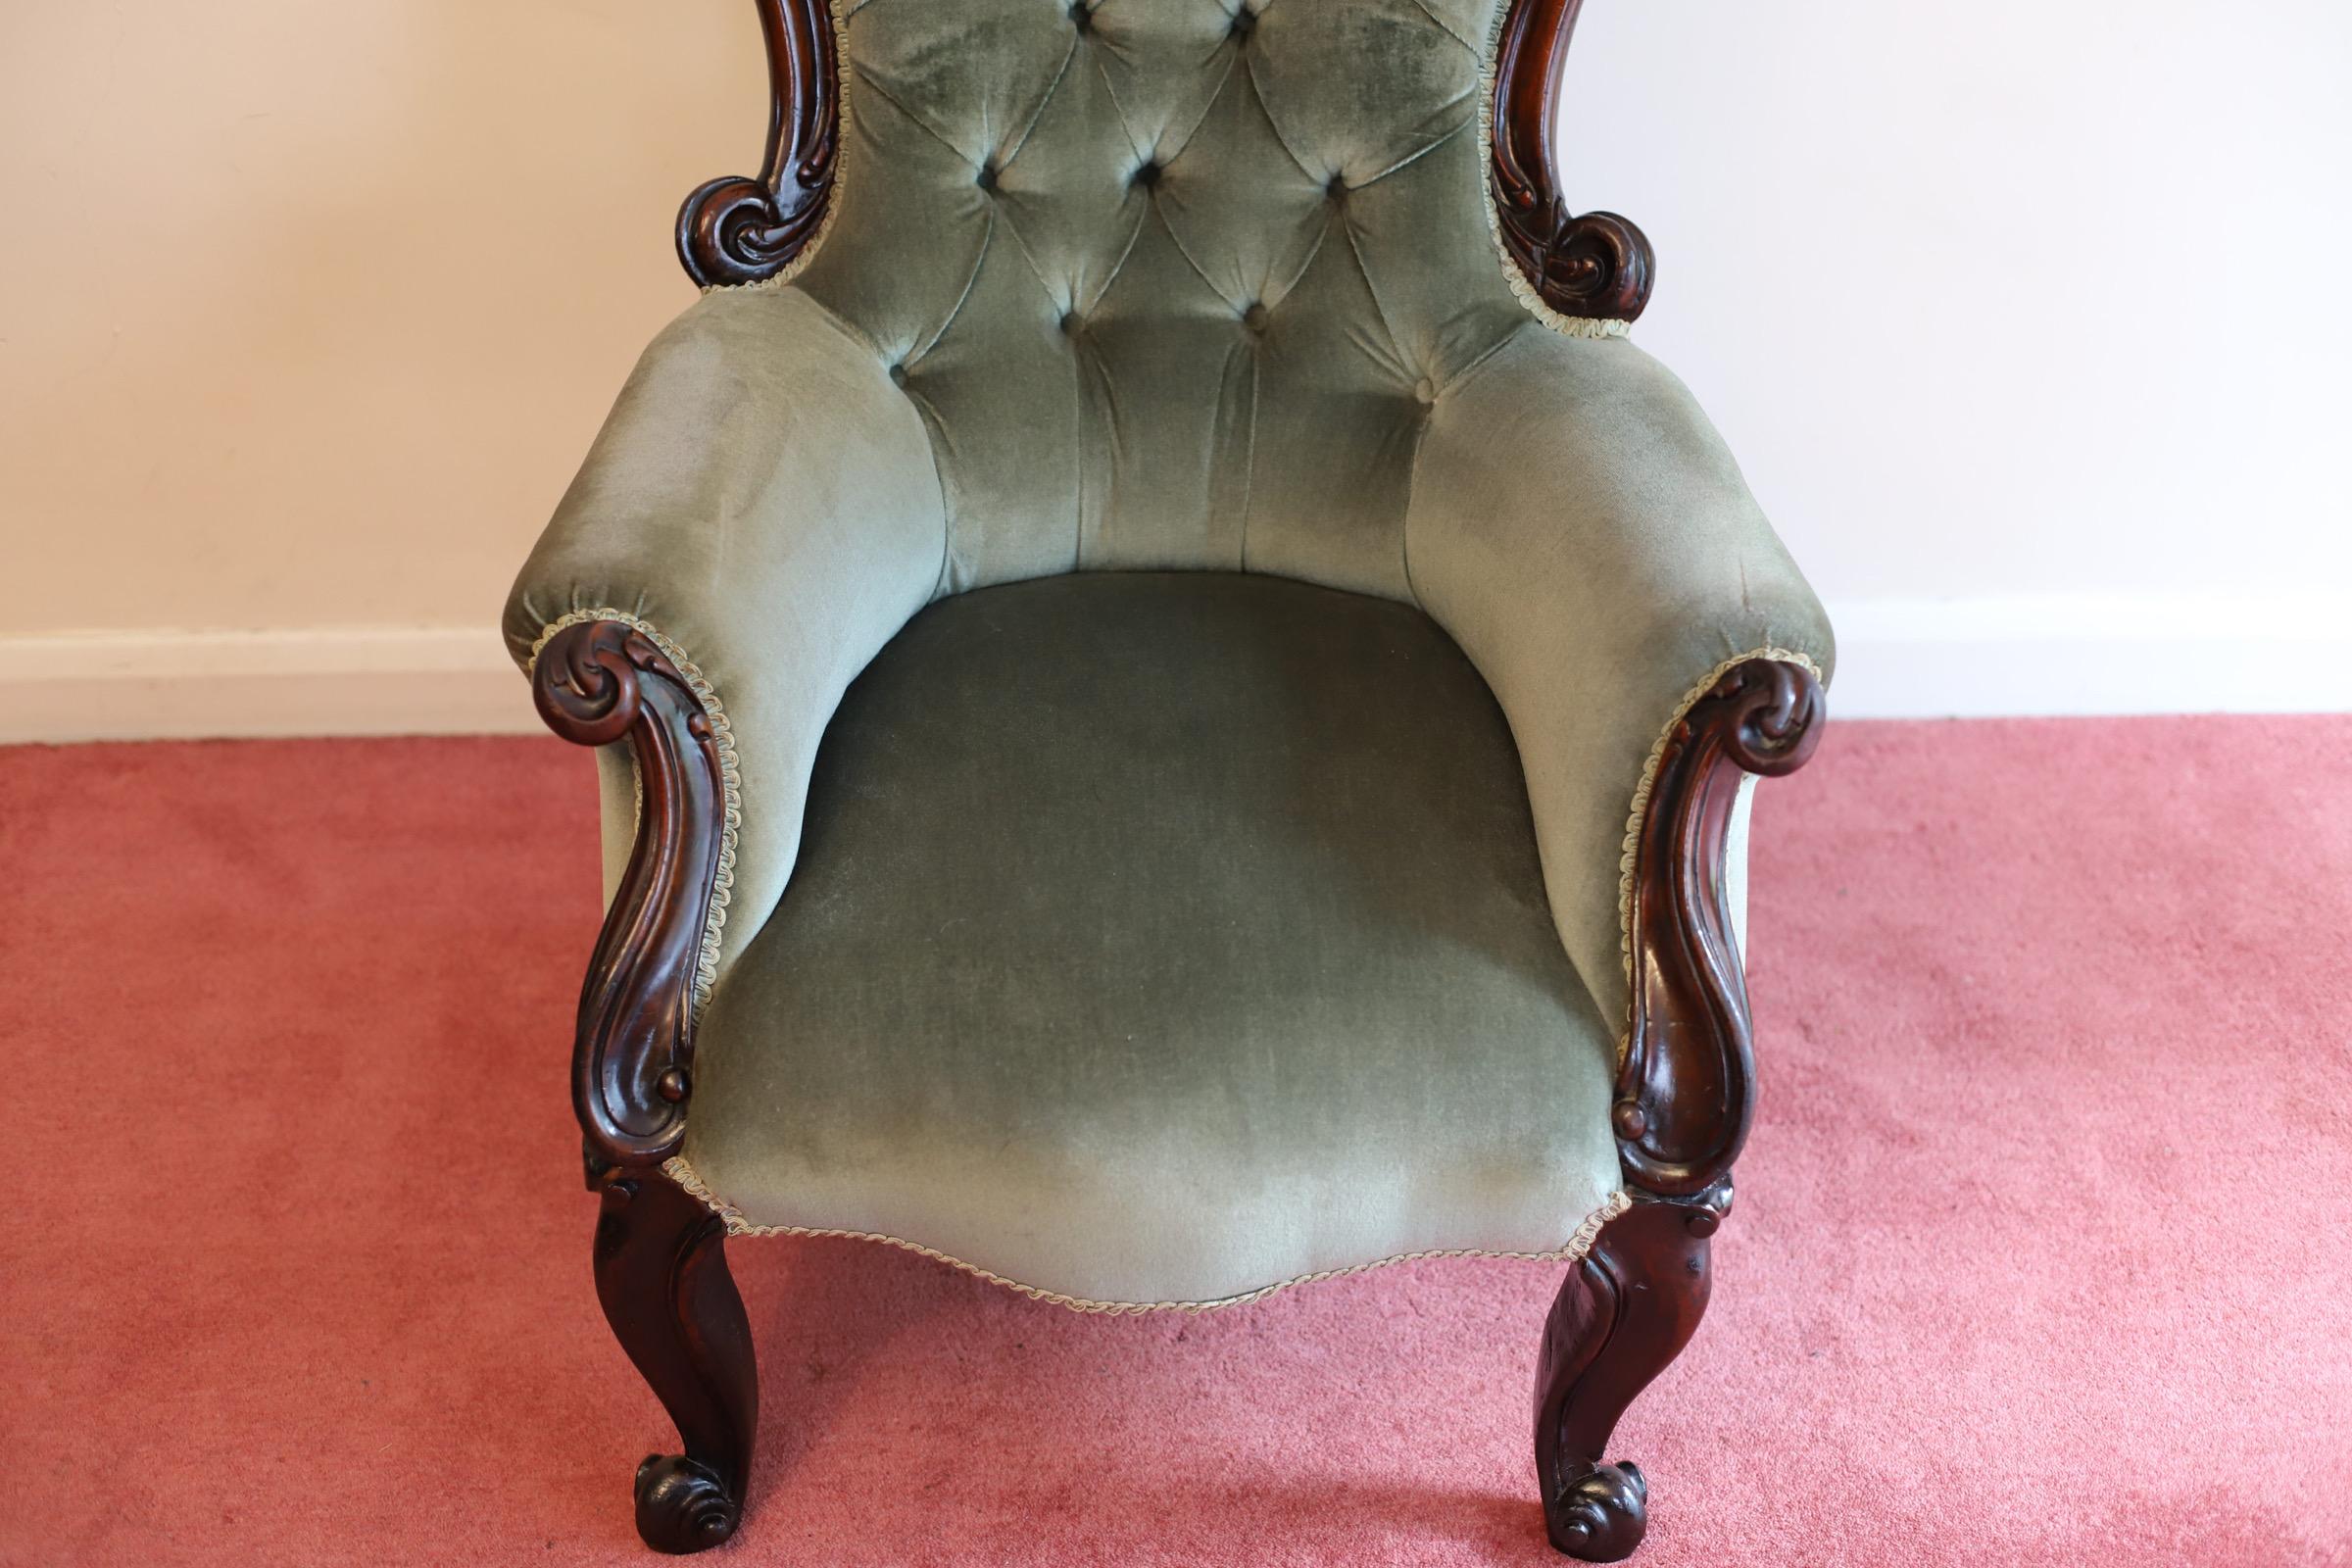 Magnifique chêne victorien  Fauteuil. Un fabuleux fauteuil victorien antique rembourré. Le fauteuil ancien est recouvert d'un beau tissu vert, avec un dossier en forme de bouton, des accoudoirs à volutes et une assise rembourrée. Le fauteuil